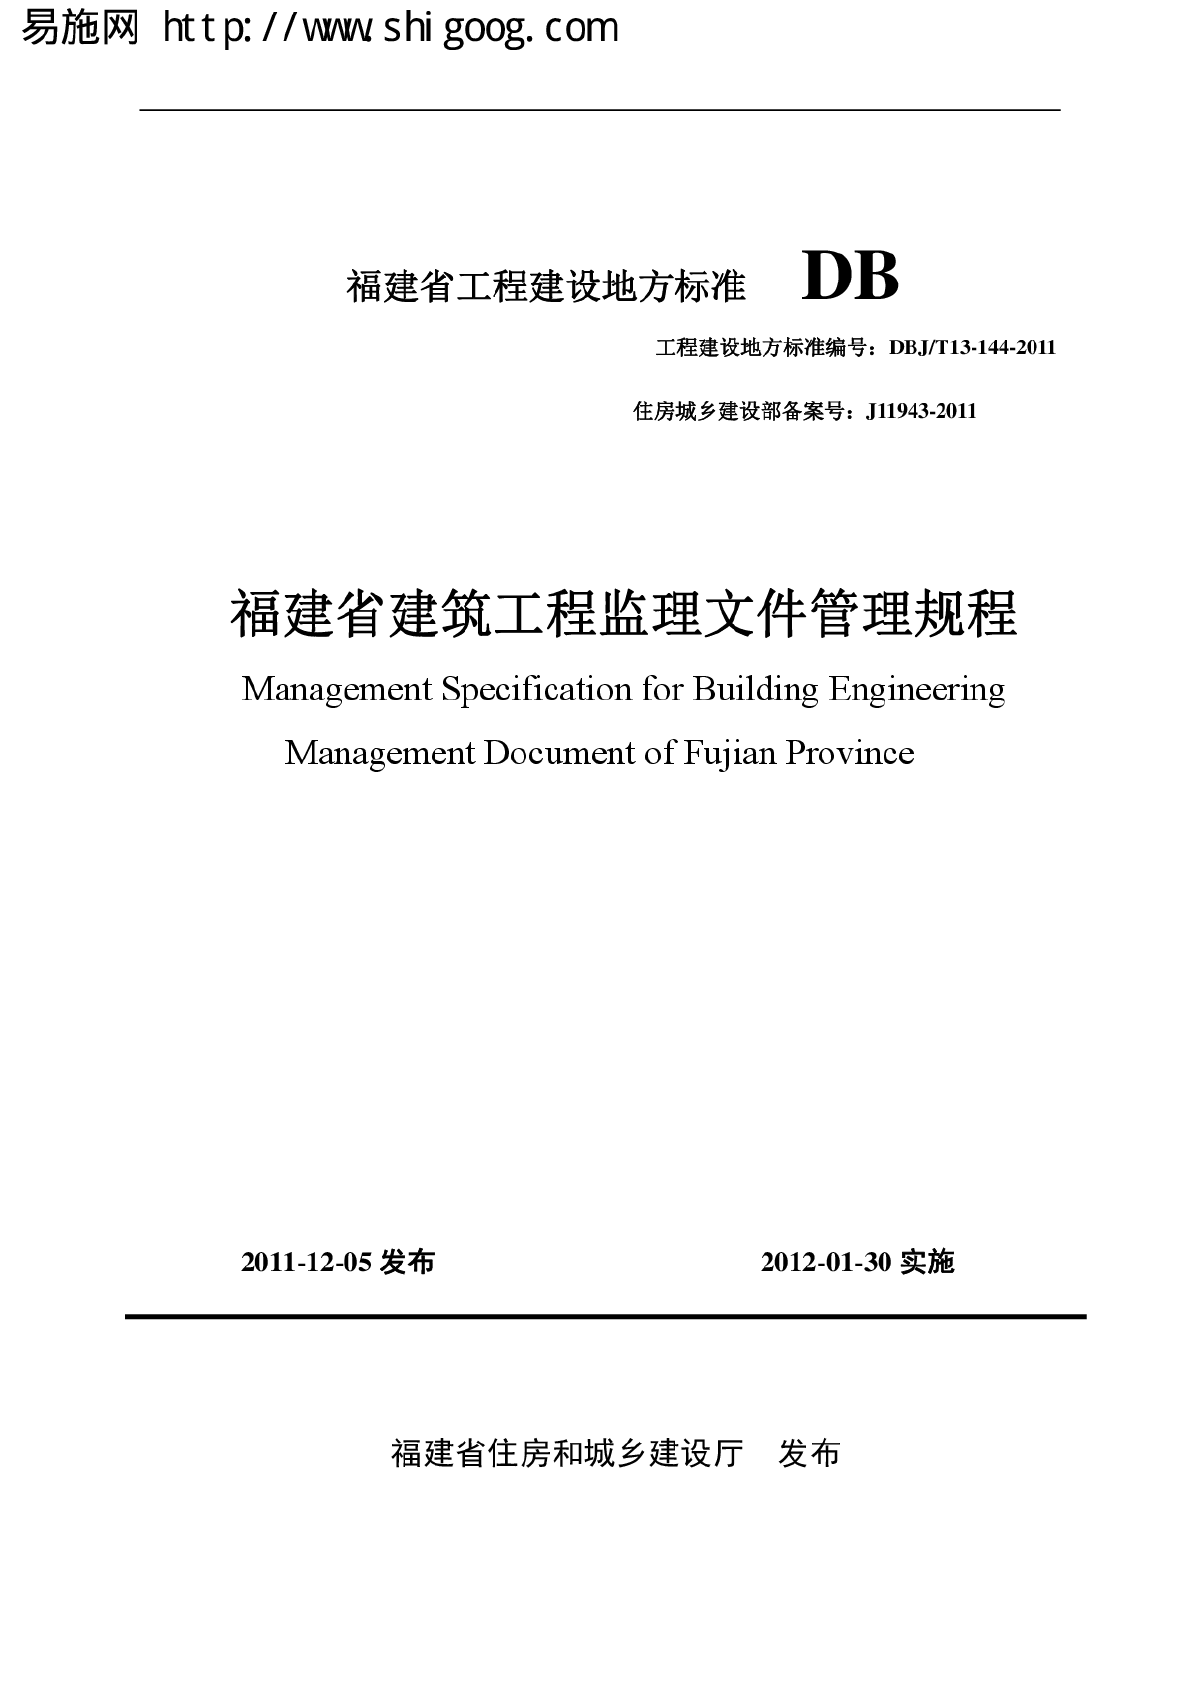 DBJT13-144-2011 福建省建筑工程监理文件管理规程-图一